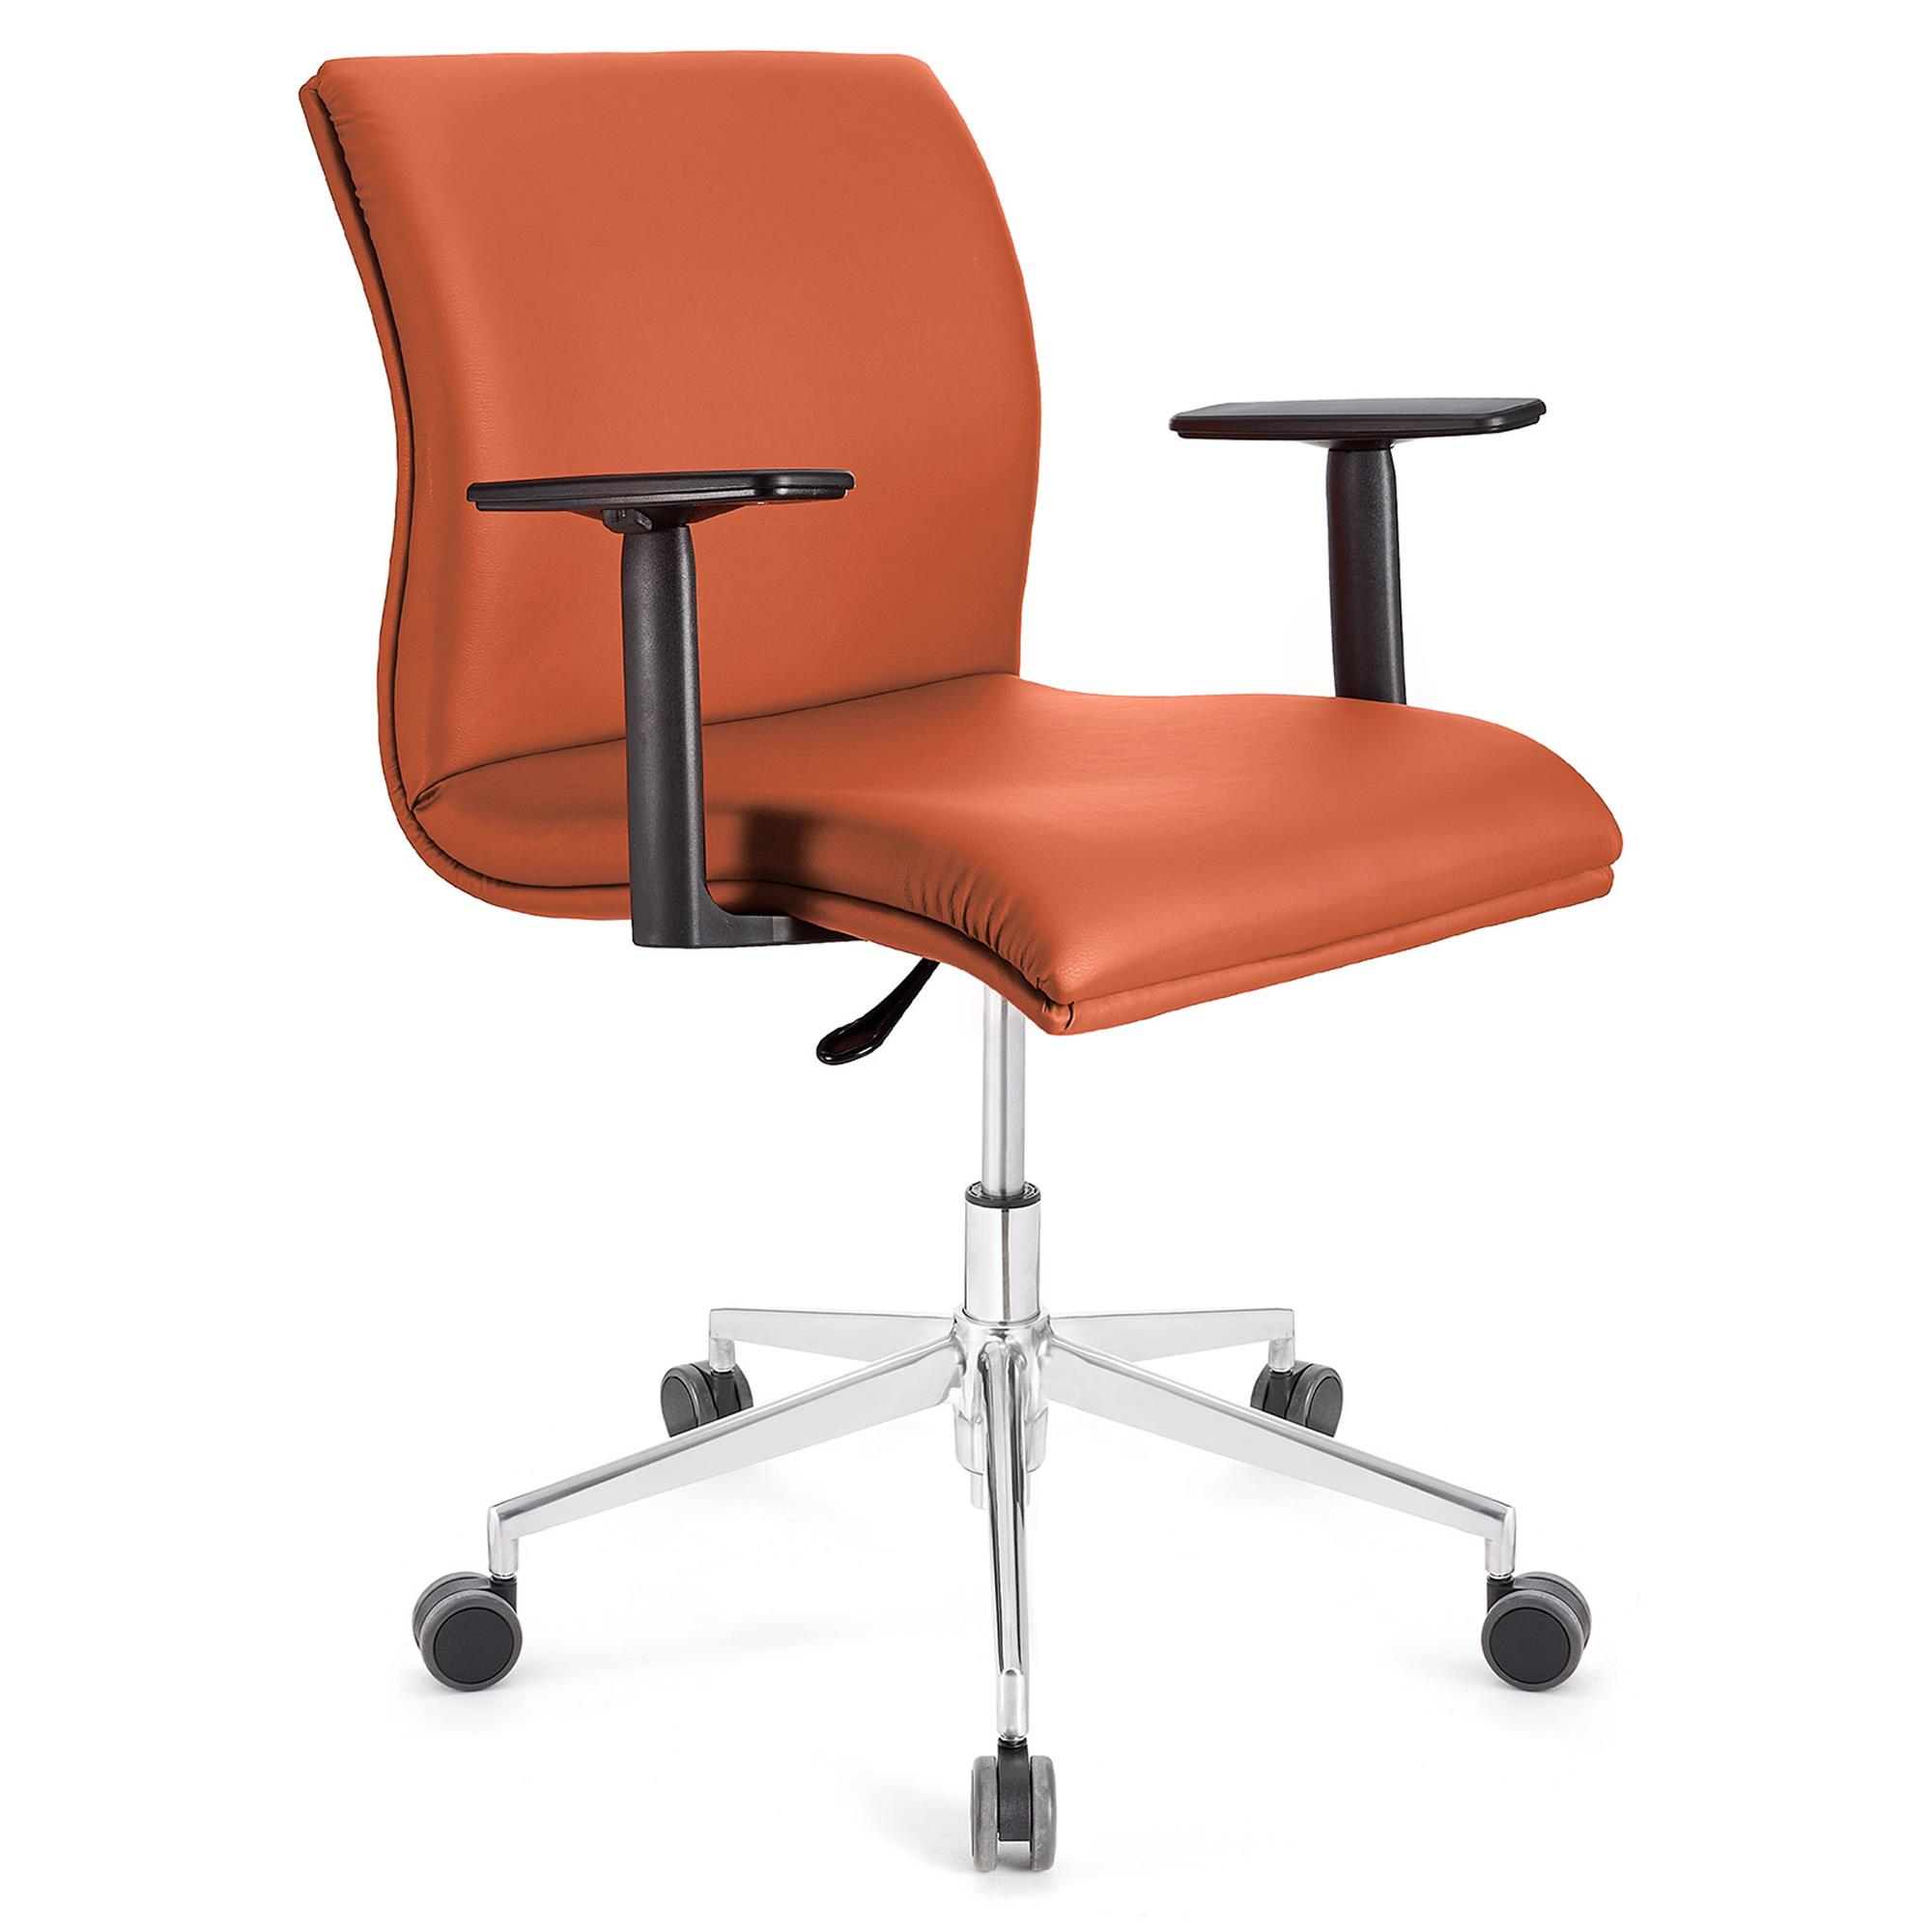 Bürostuhl HANNIBAL BASIS PRO LEDER, verstellbare Armlehnen, dicke Polsterung, Farbe Orange